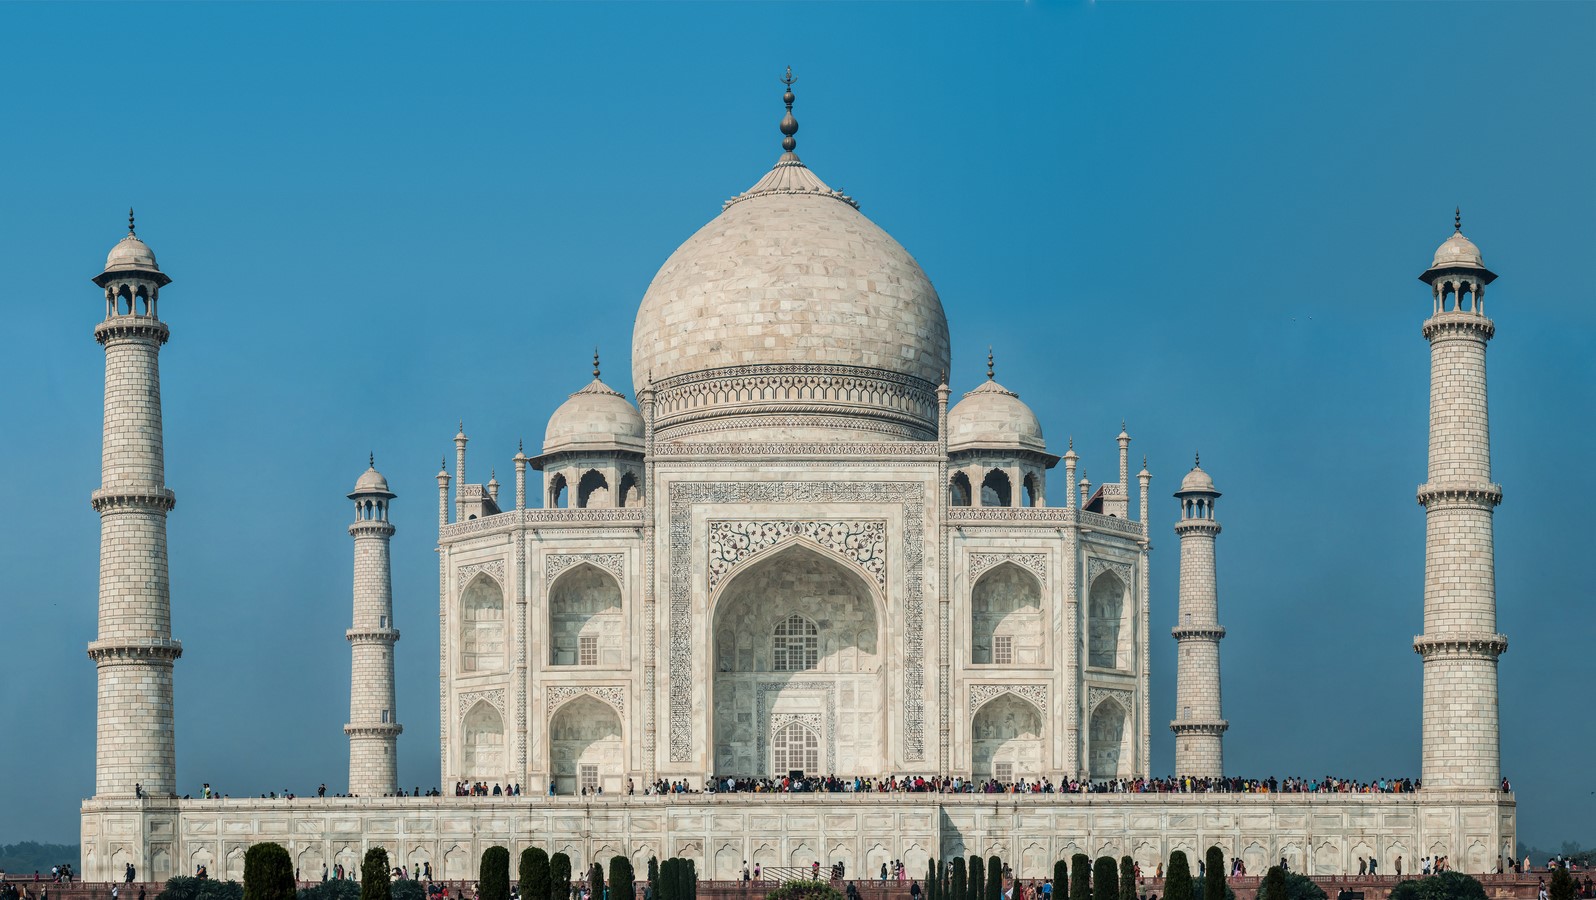 The Taj Mahal, India - Sheet1